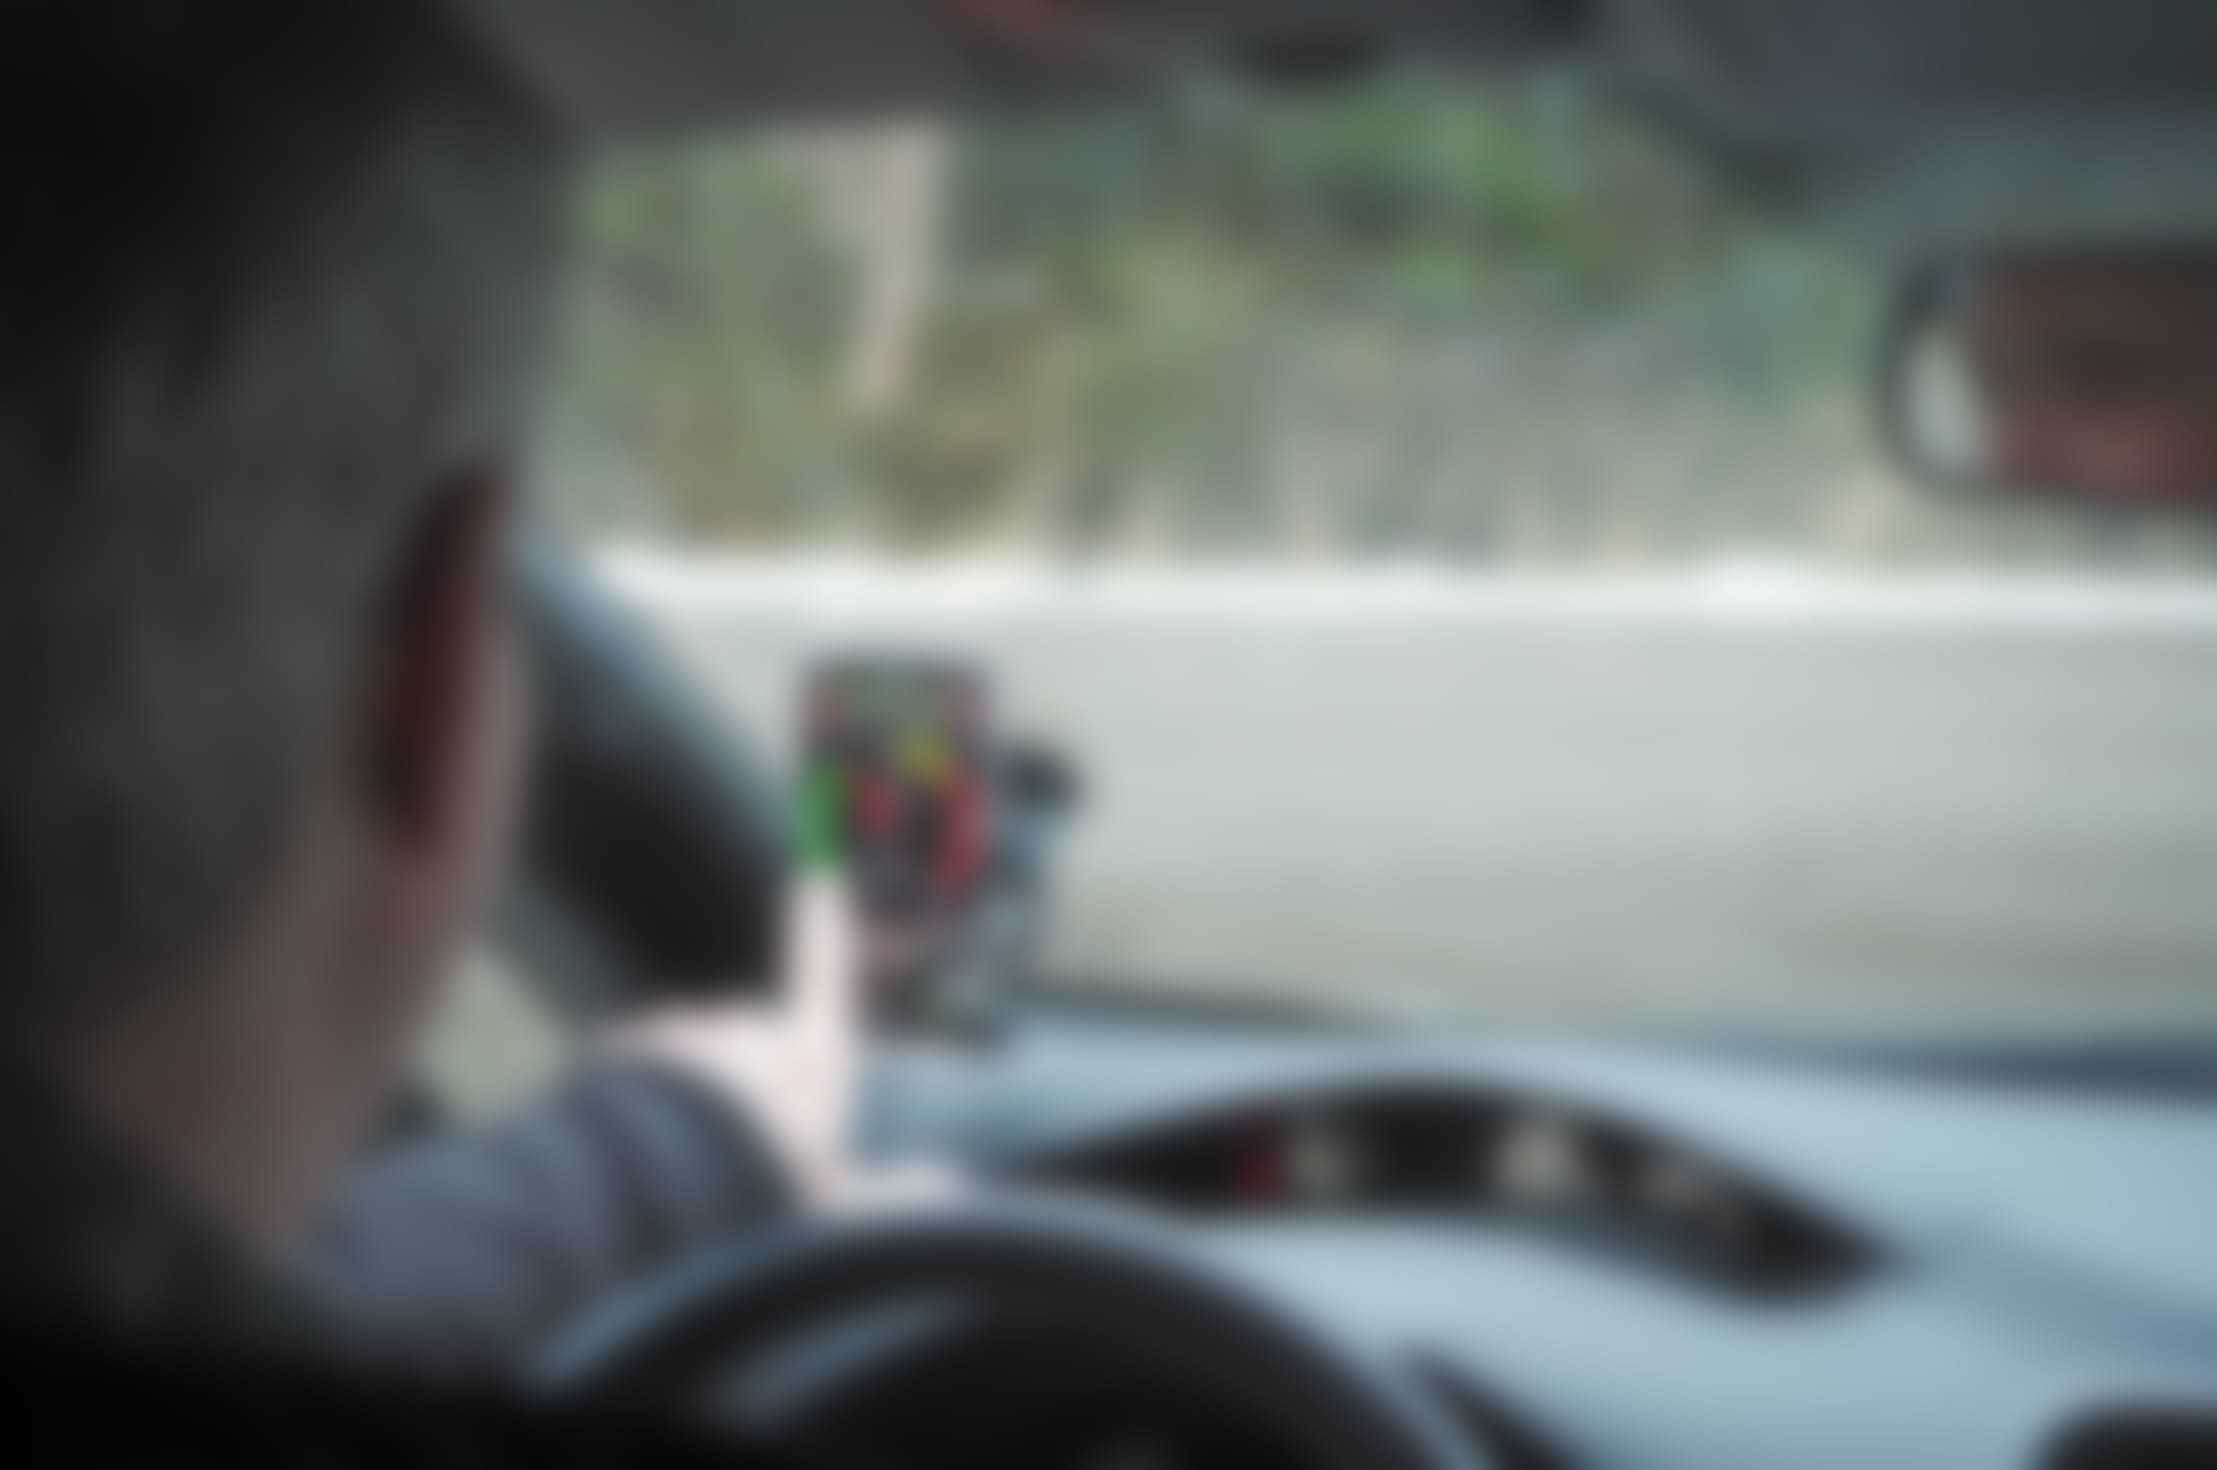 Mann fikler med test-skjerm i bil som står stille